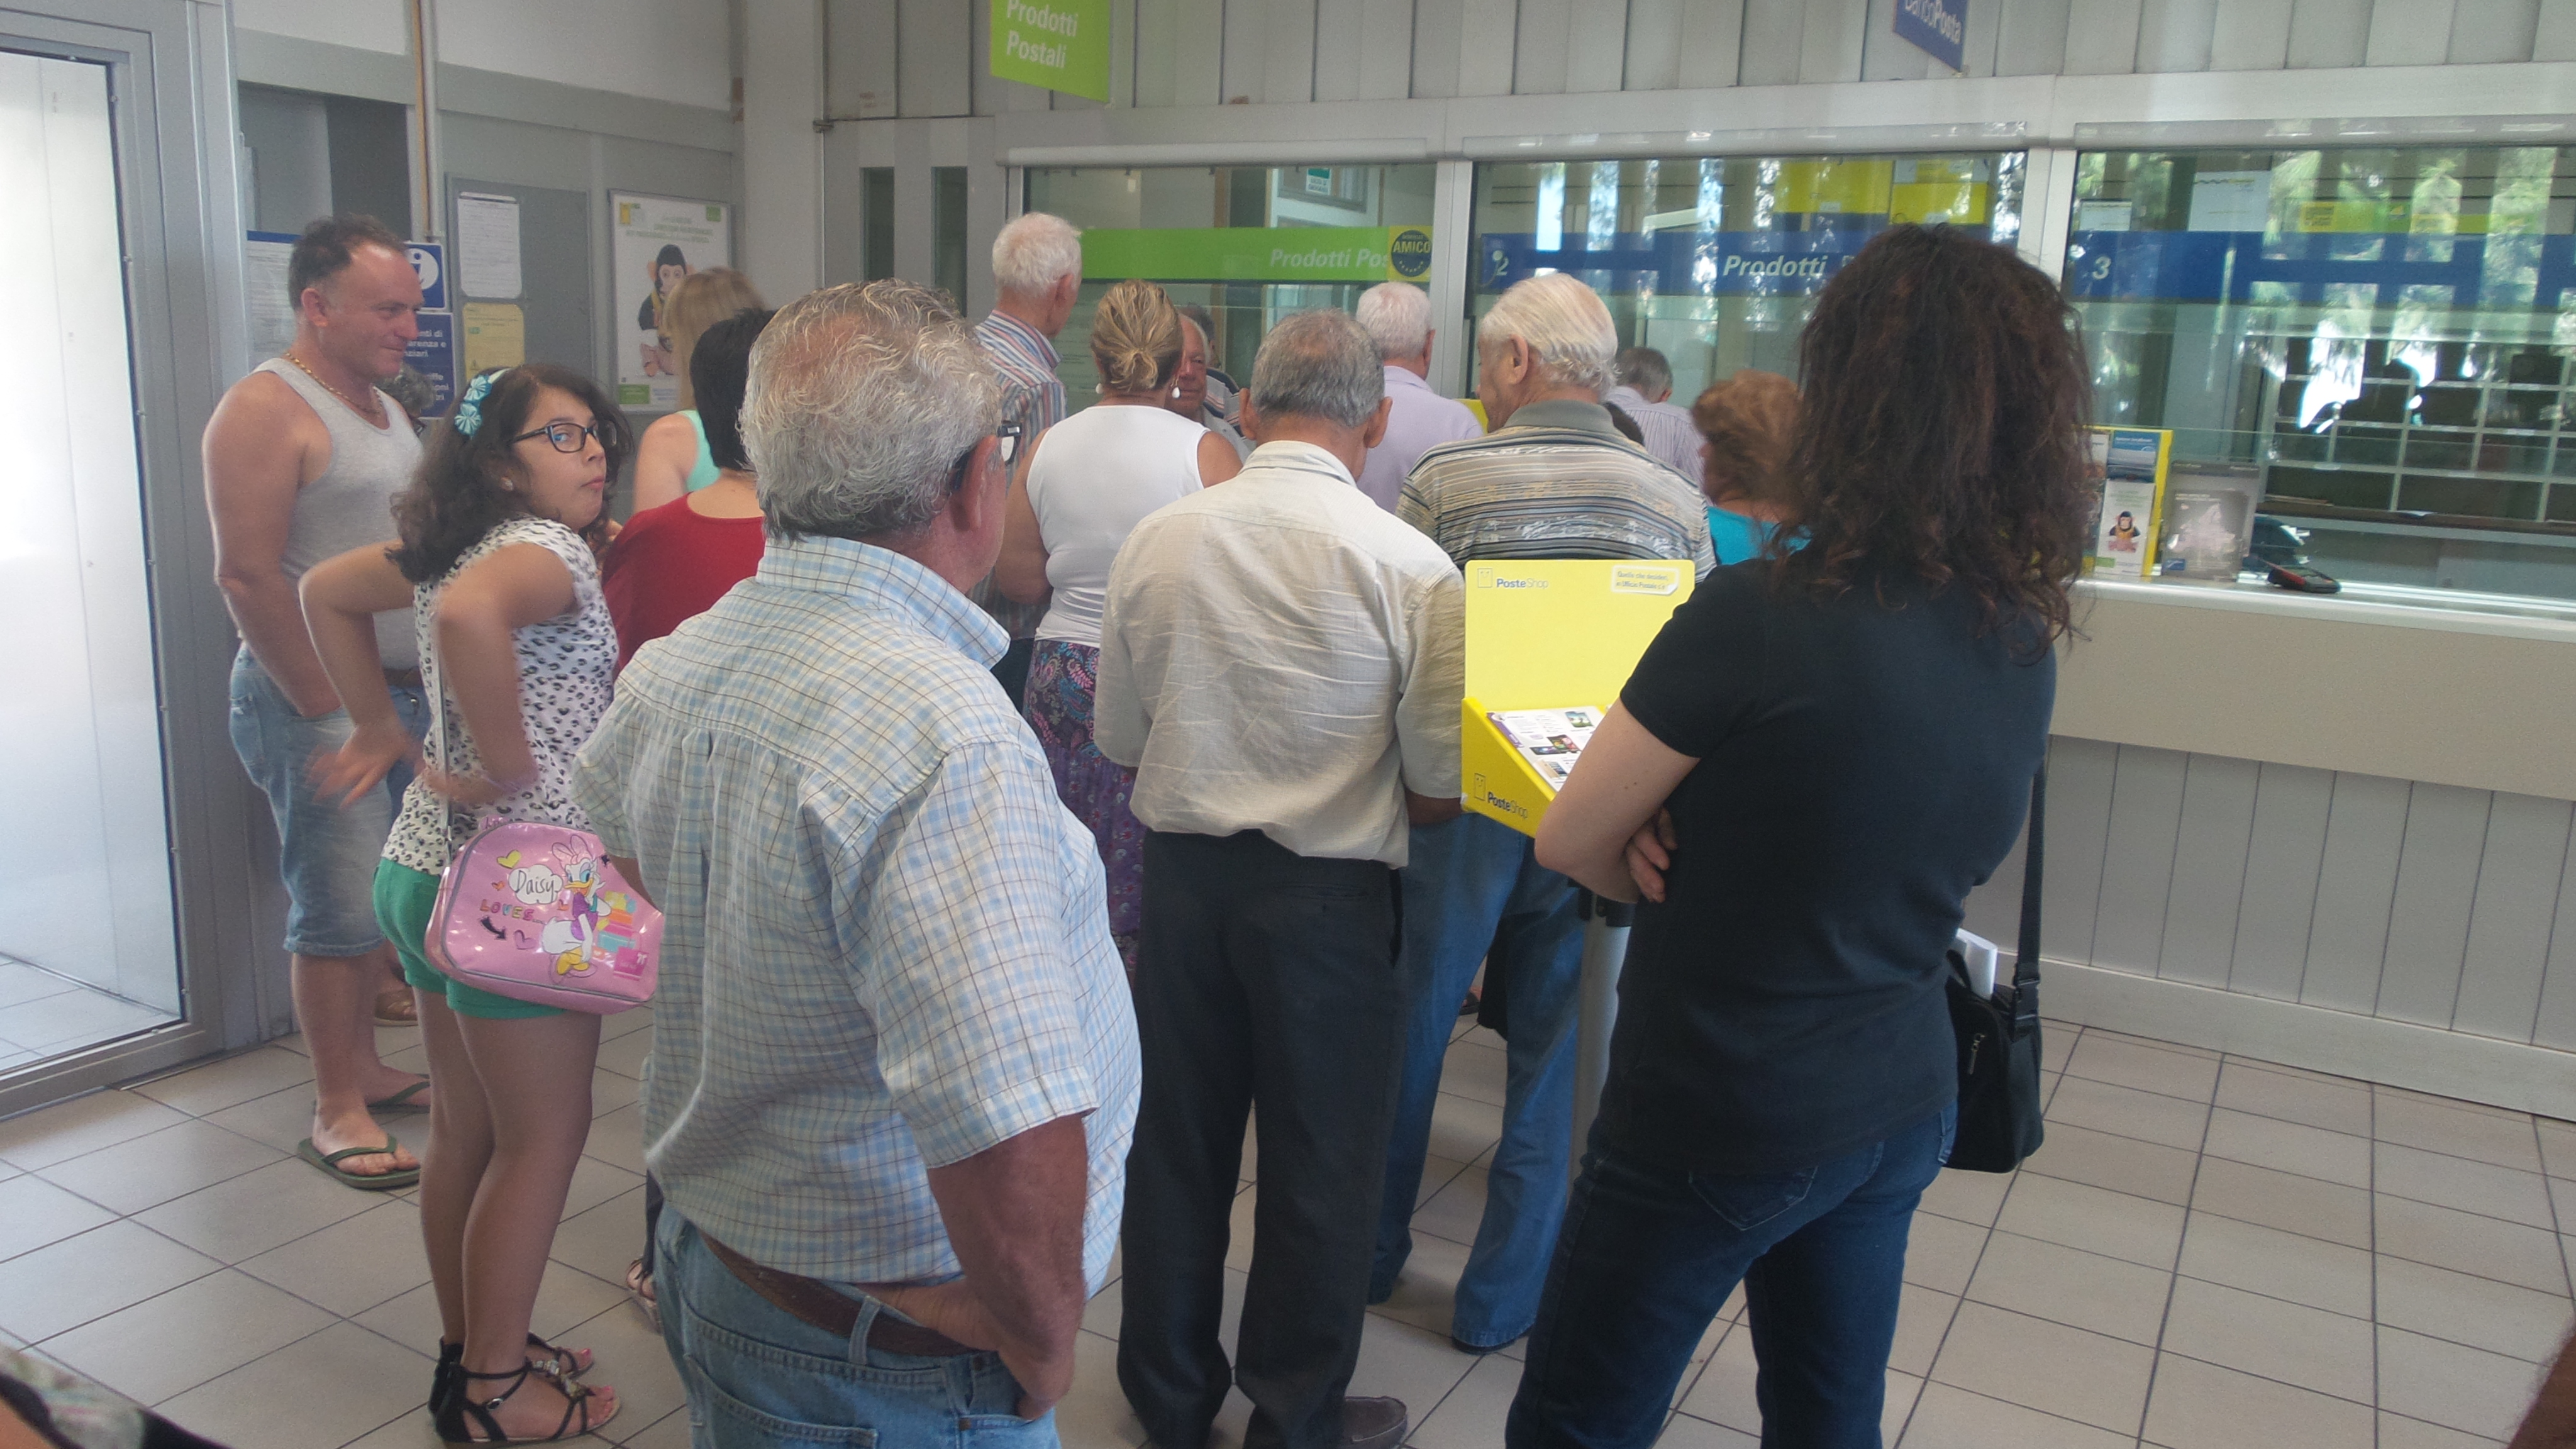  Proteste e lunghe file all’Ufficio postale di Santa Croce: “Troppo pochi due sportelli per tutti…”